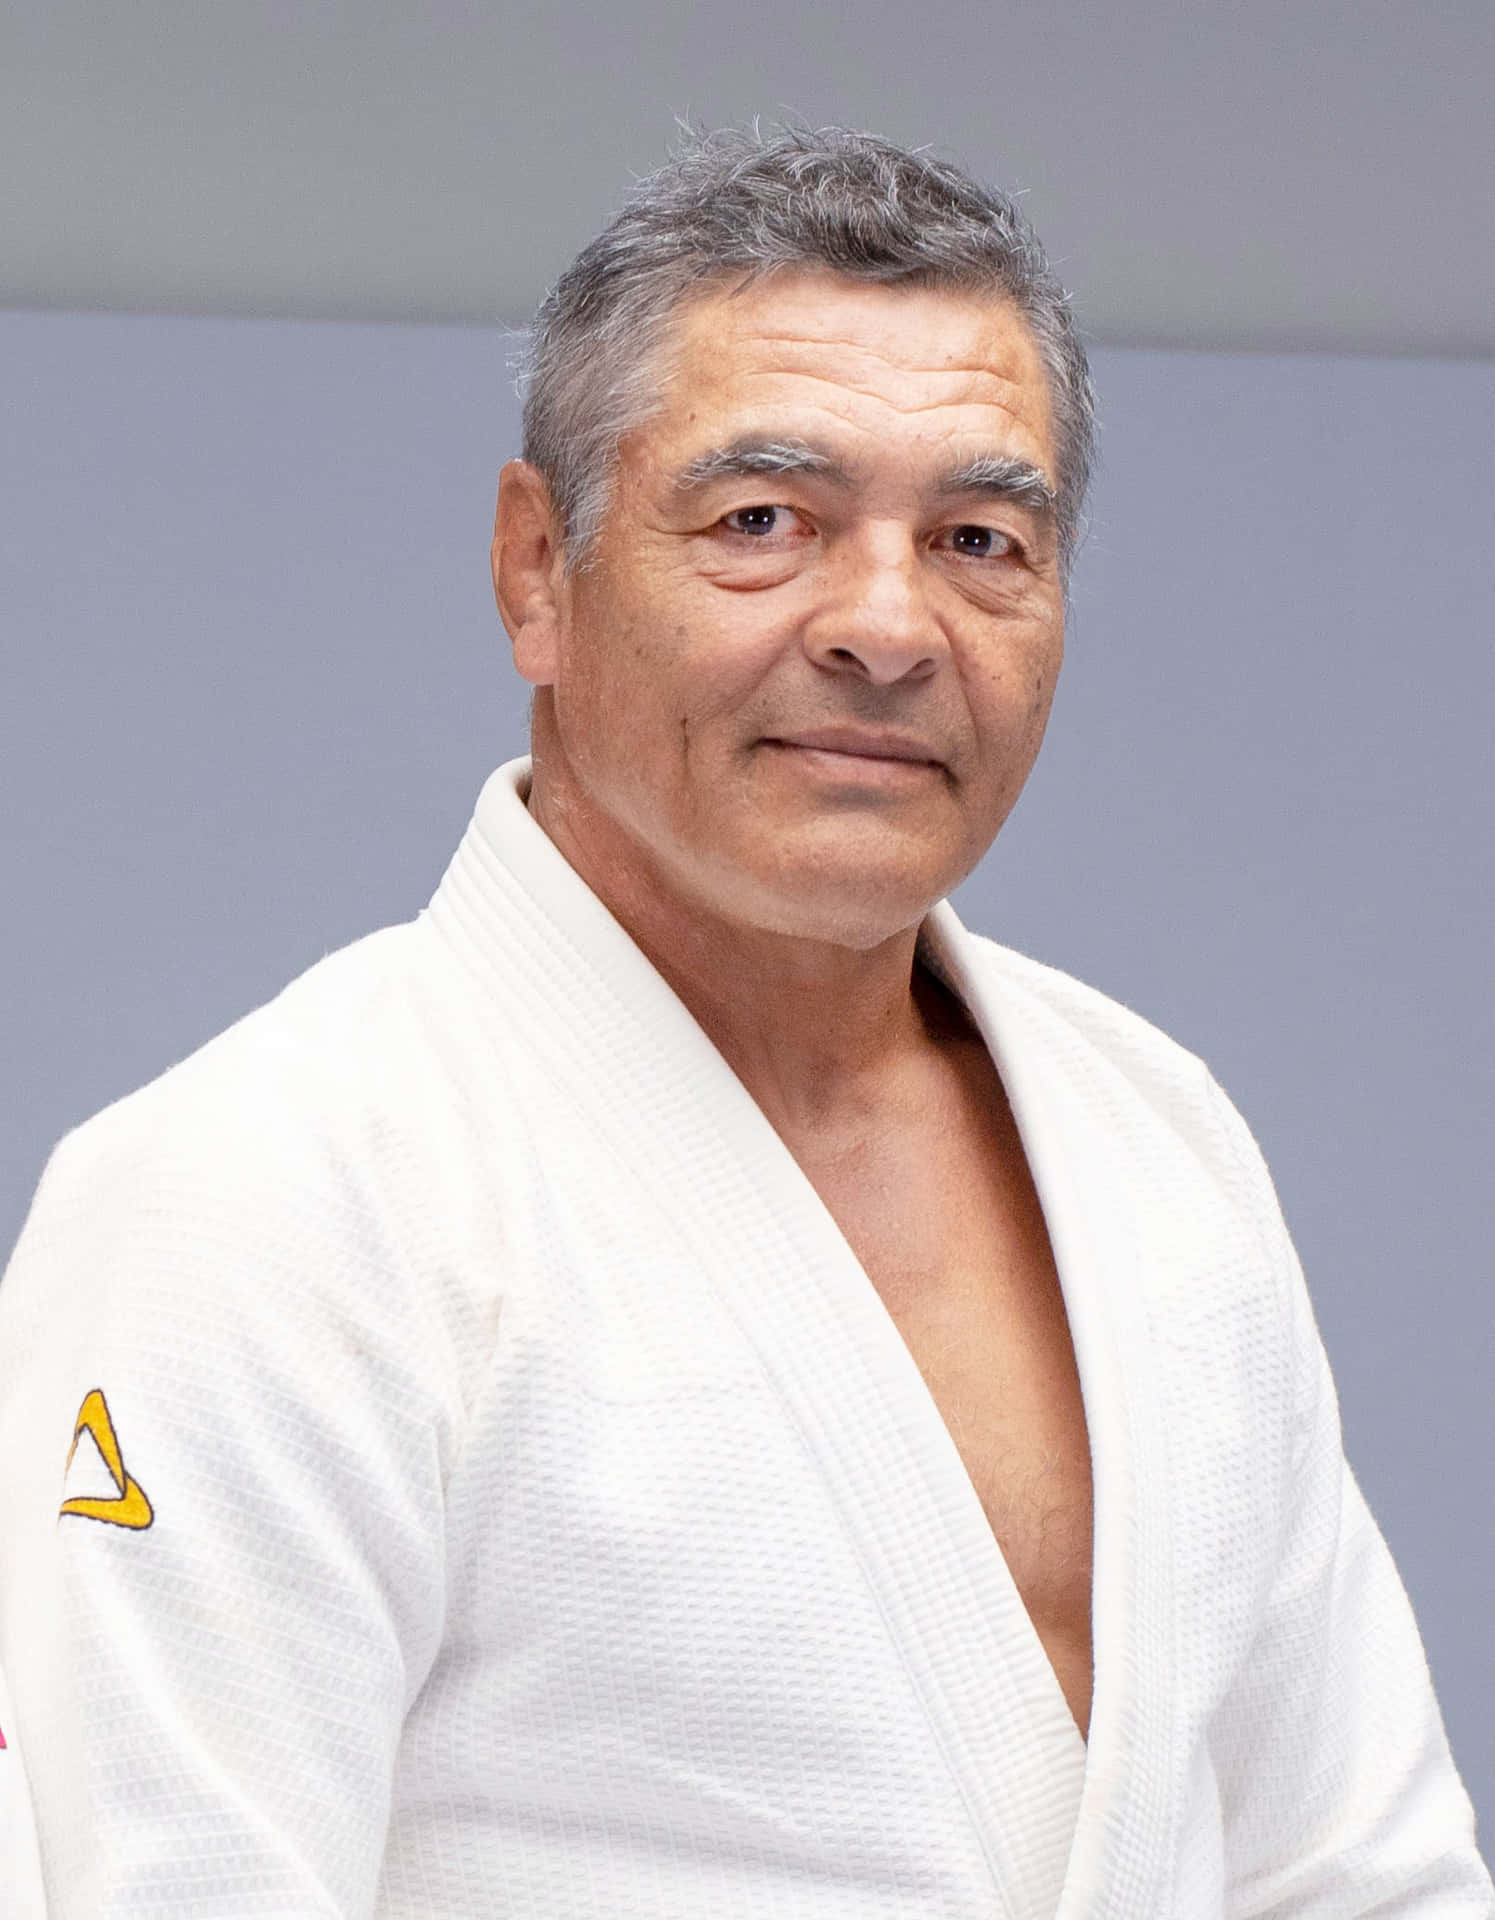 Brazilian Martial Arts master, Rickson Gracie, in a 2021 candid portrait. Wallpaper